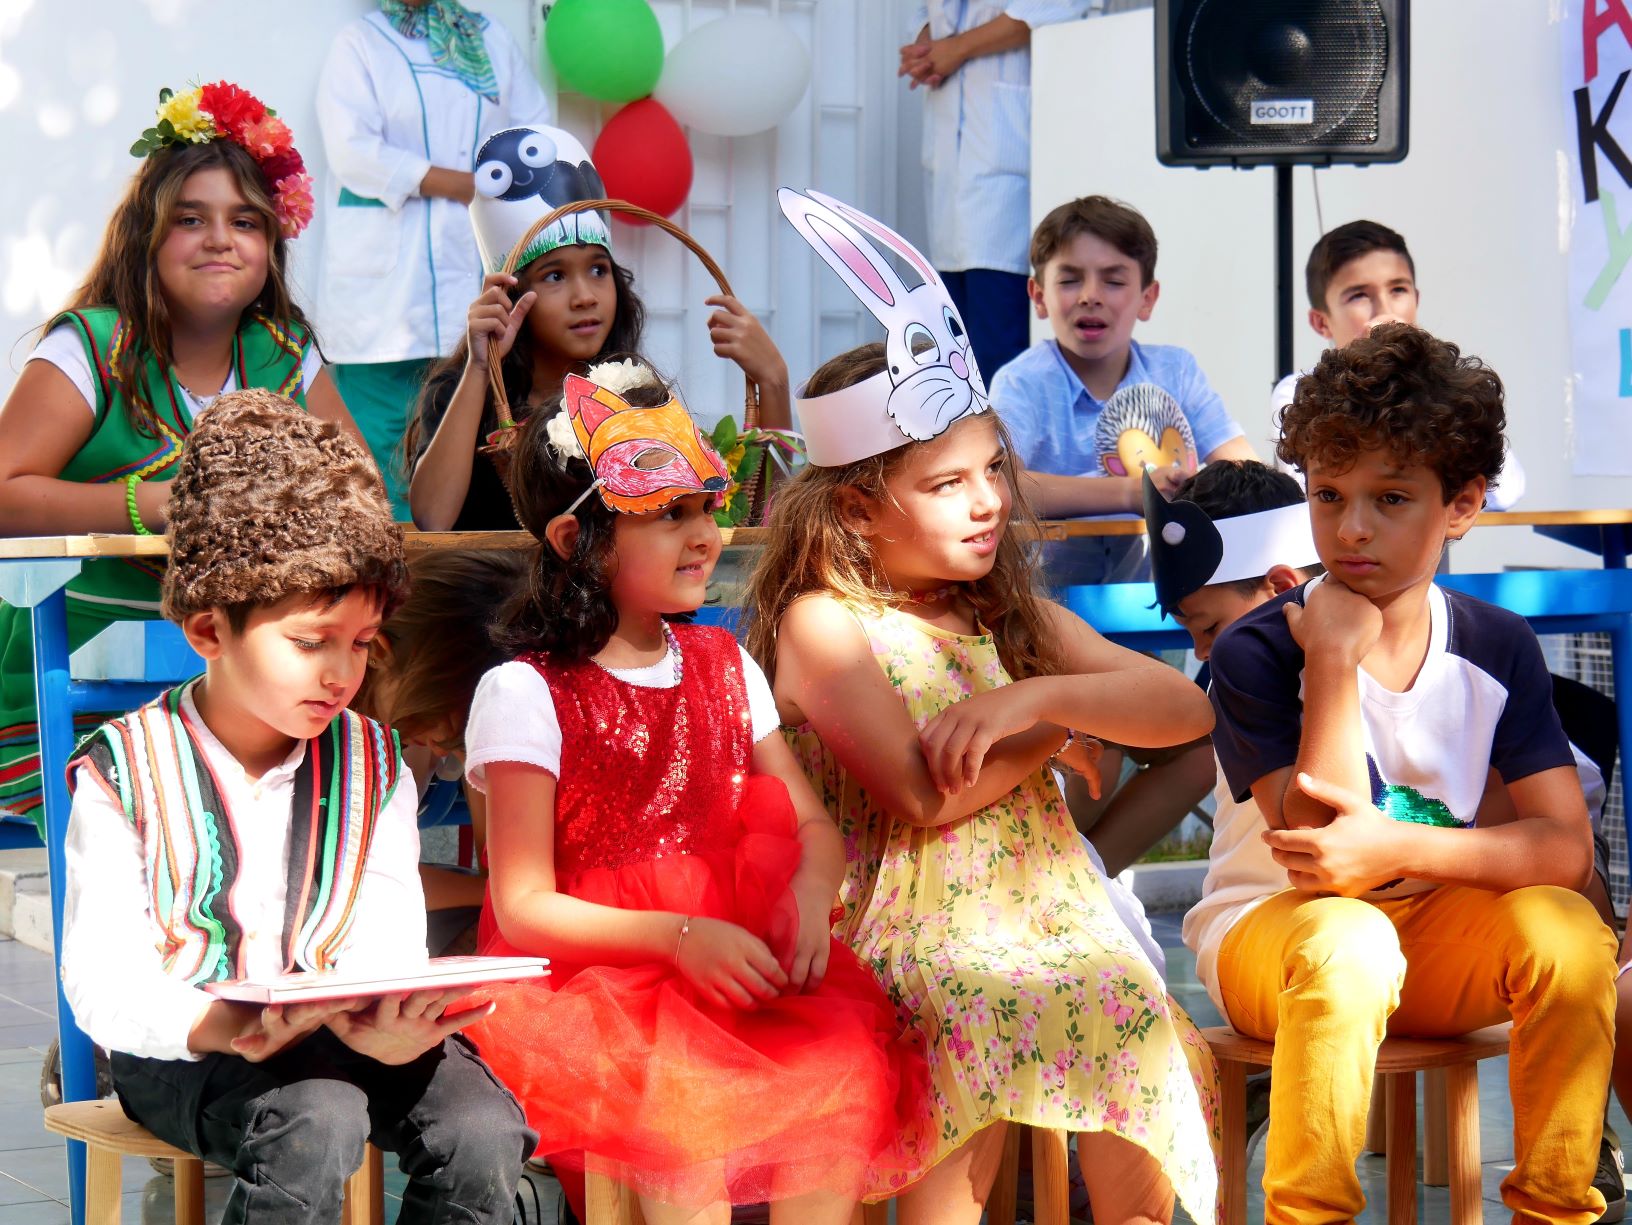 Тържествено откриване на учебната година  в неделното българско училище „Родолюбие“ в Кралство Мароко